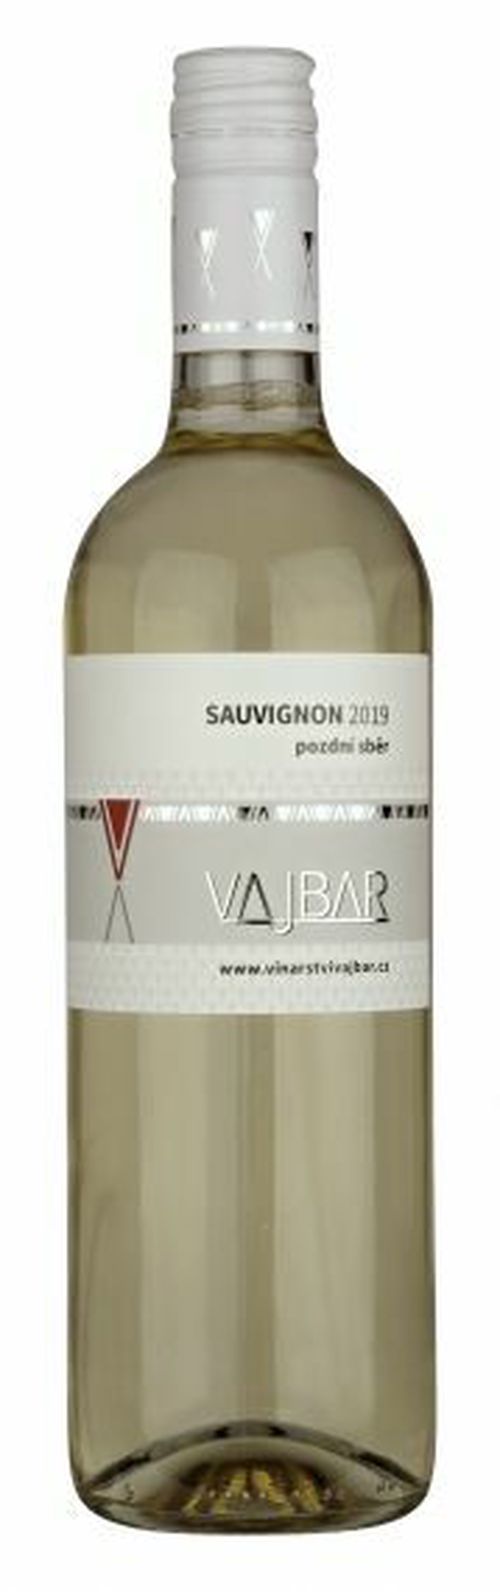 Vajbar Sauvignon jakostní víno s přívlastkem pozdní sběr 2019 suché 0,75 l